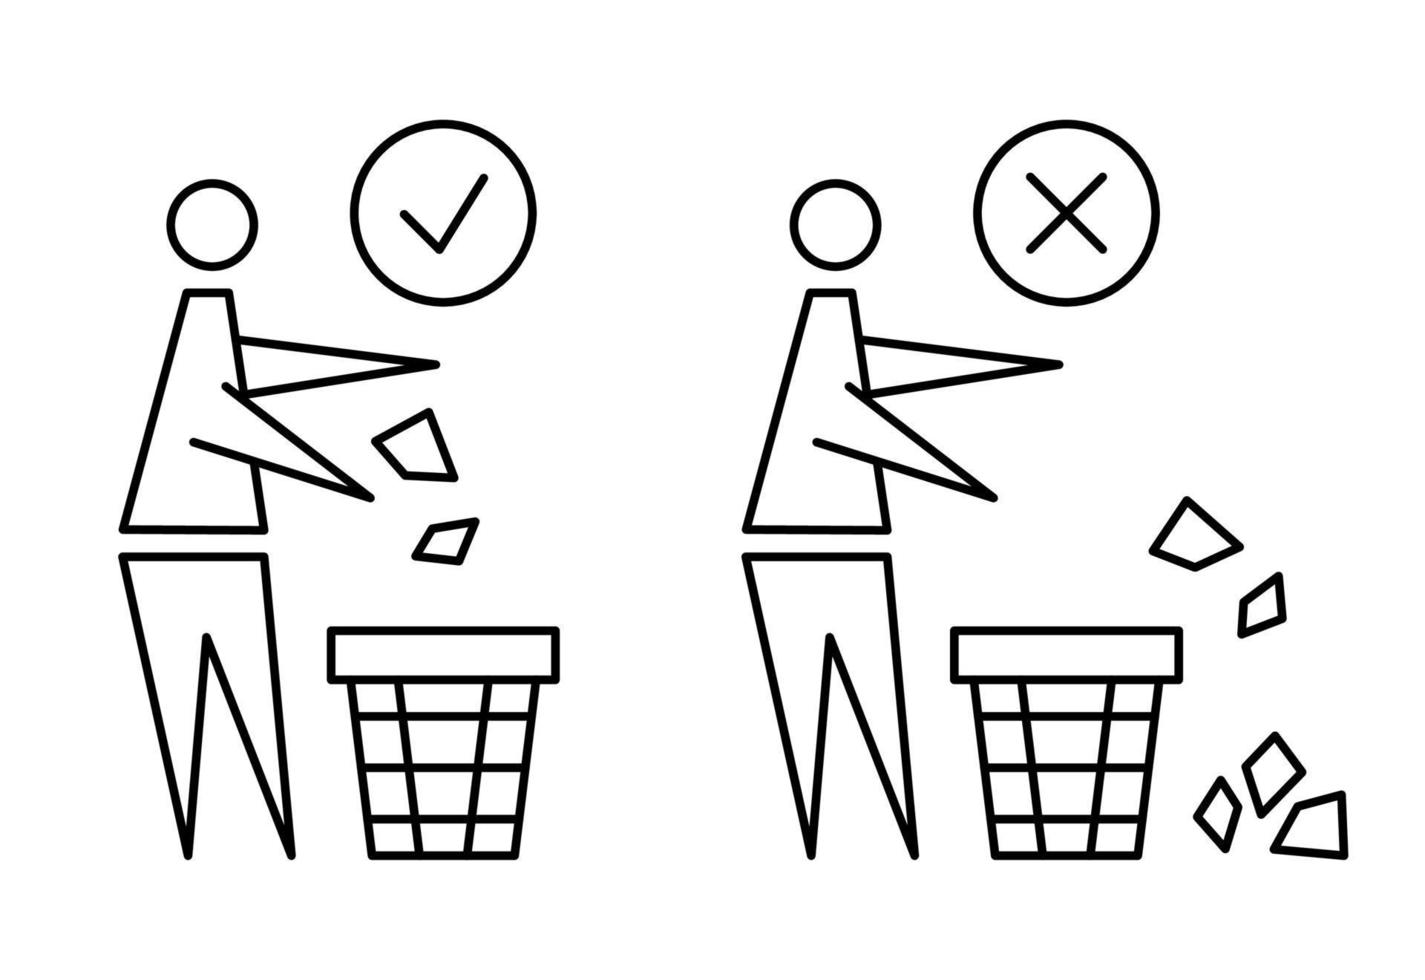 garder le propre. icône interdite. poncez dans mettre les ordures à sa place. homme bien rangé, ne jetez pas de déchets, icône. s'il vous plaît ne jetez pas d'ordures. ne jetez pas de déchets, placez les déchets dans les poubelles prévues. trait modifiable vecteur